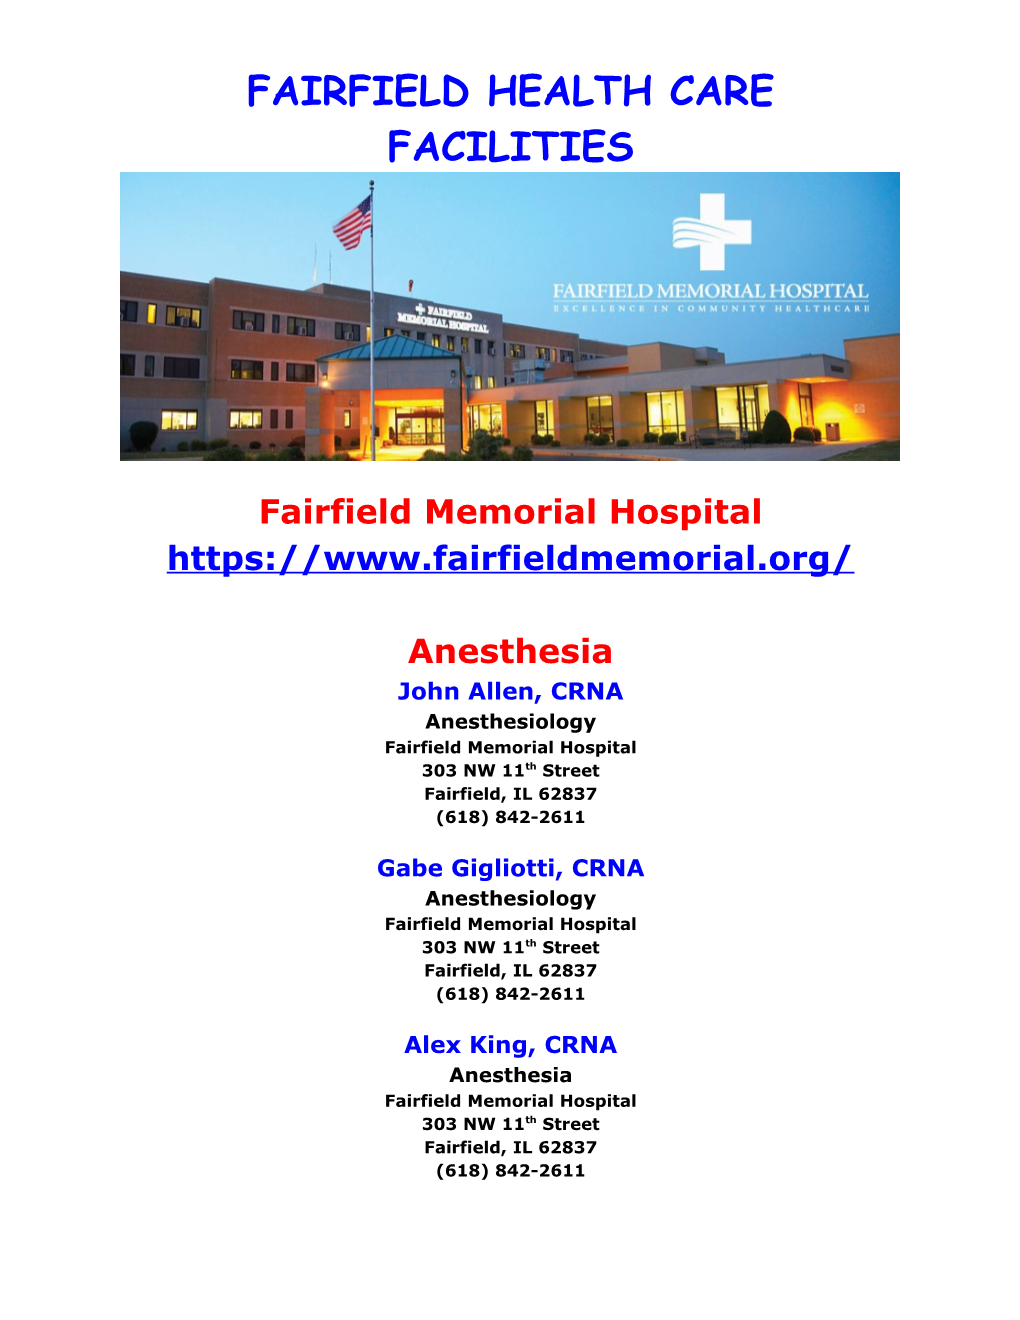 Fairfield Health Care Facilities